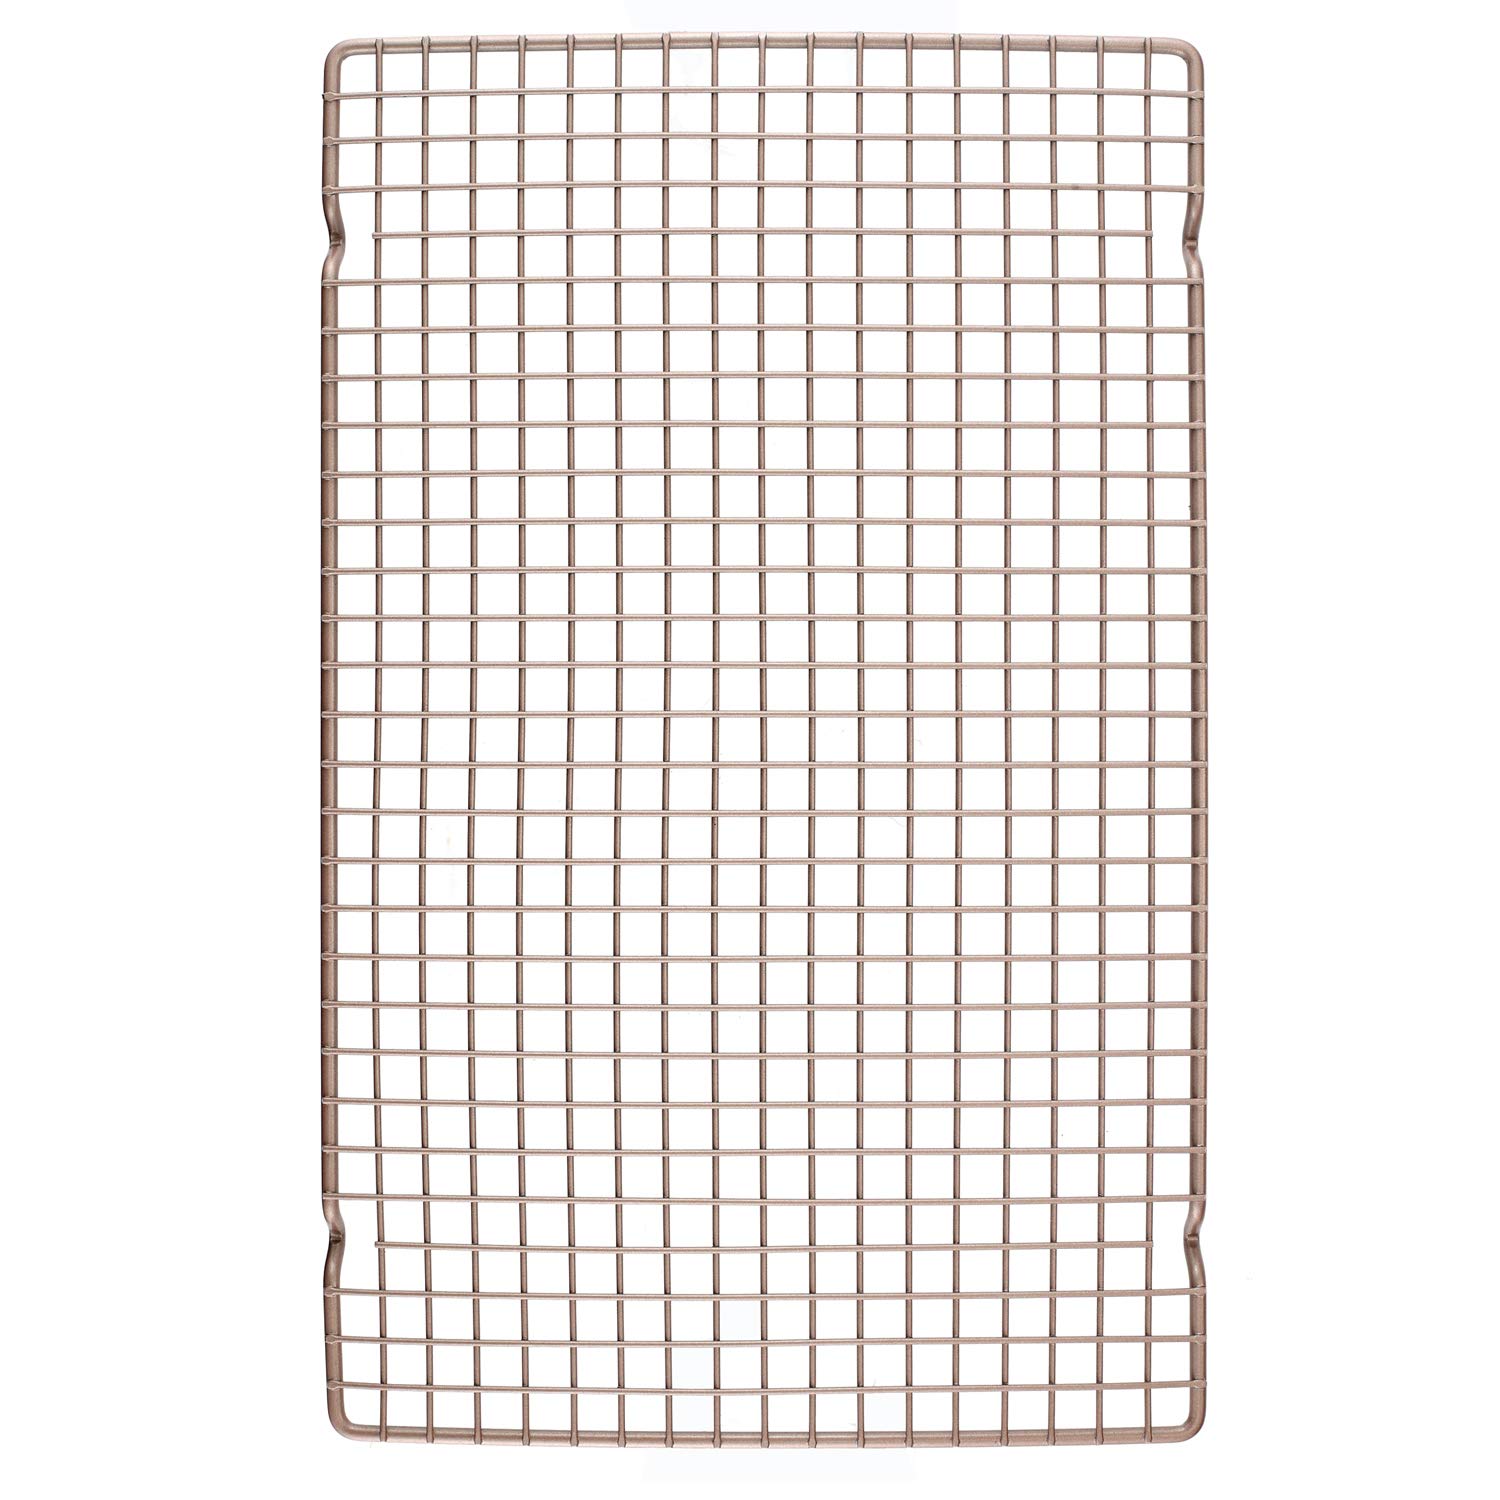 CHEFMADE Khay lưới thoáng khí chống dính hình chữ nhật có kích thước 16 inch dùng để nướng bánh mì WK3004 - INTL